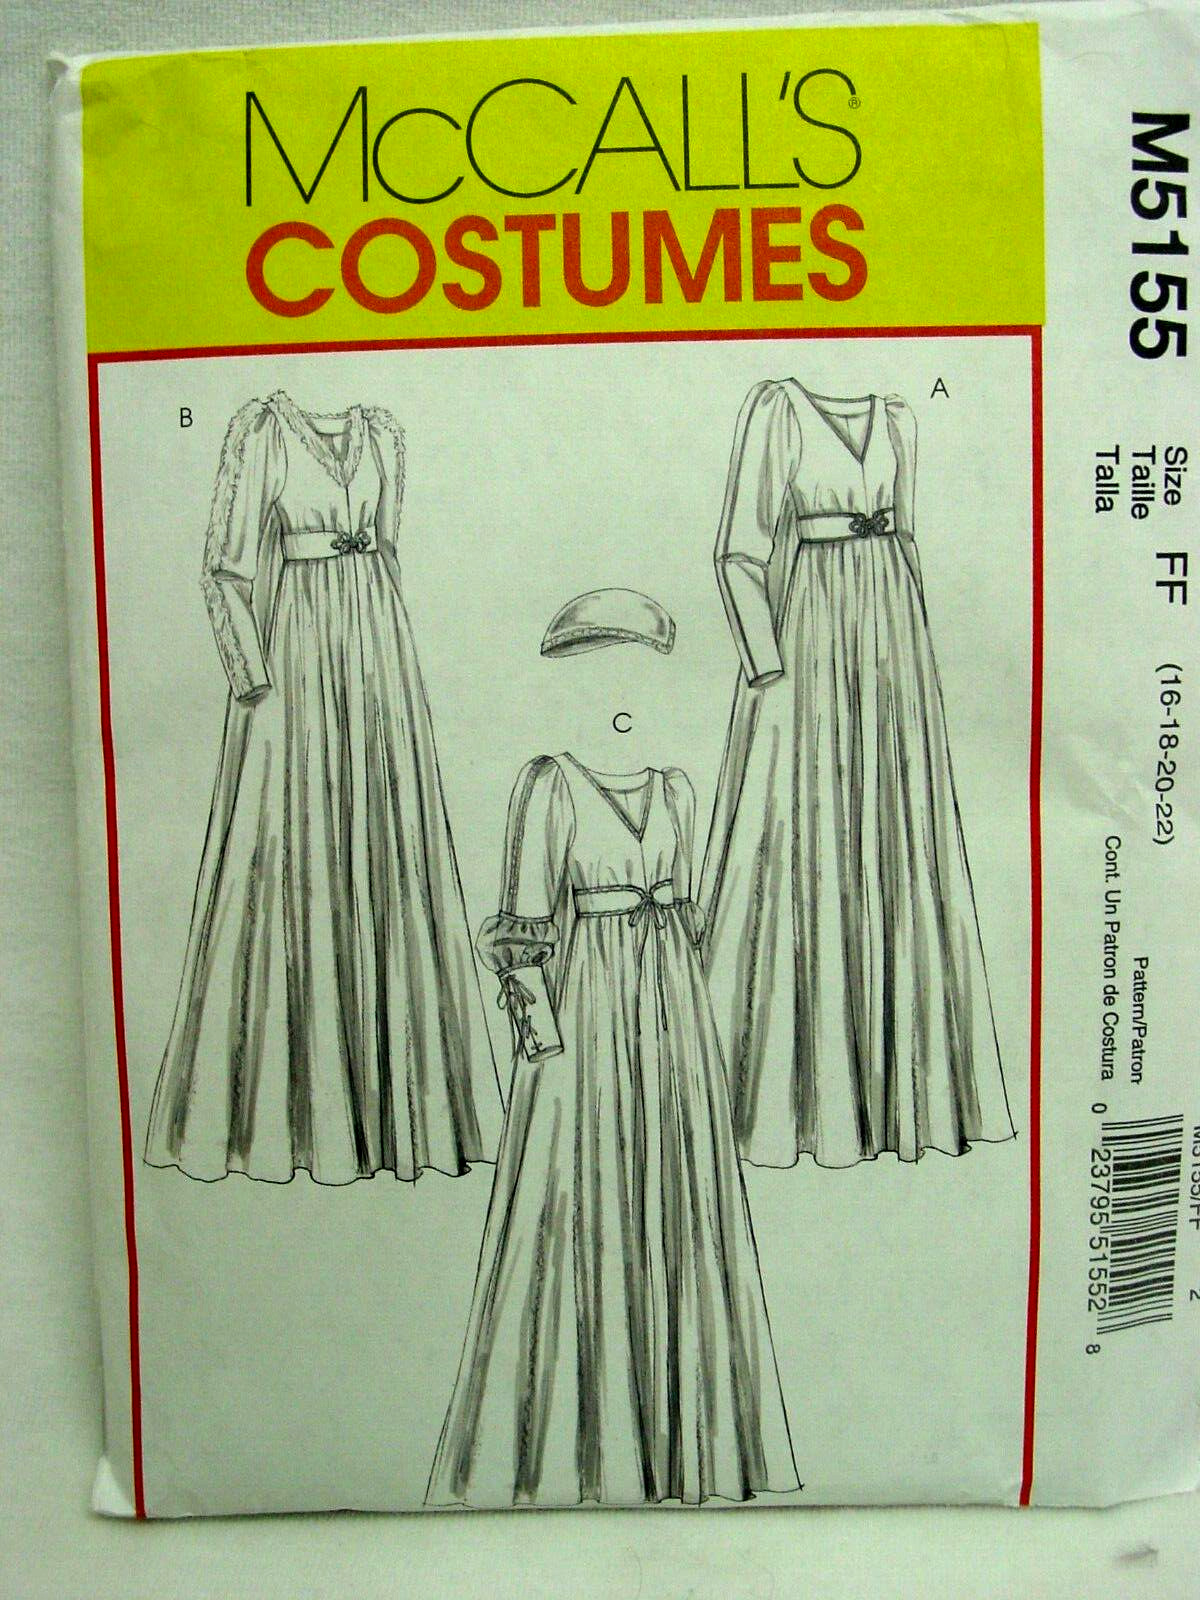 McCall's Misses' Petite Renaissance Costume Pattern M5155 Size 16-22 UNCUT